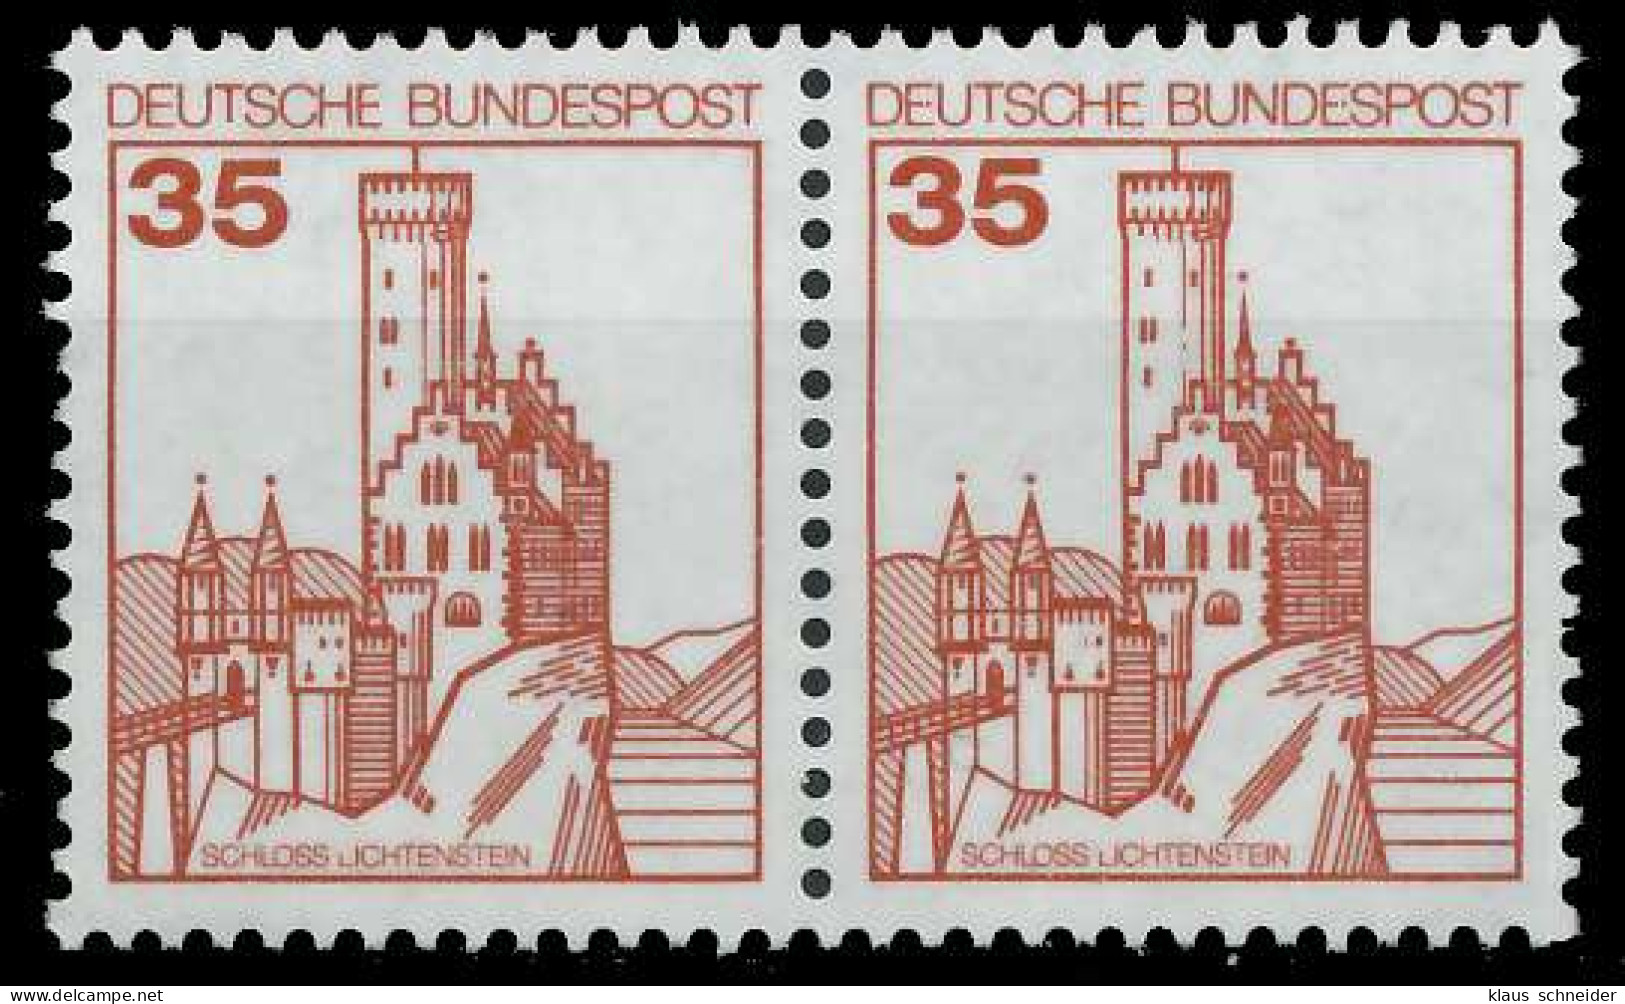 BRD DS BURGEN U. SCHLÖSSER Nr 1139 Postfrisch WAAGR PAA S98845A - Unused Stamps